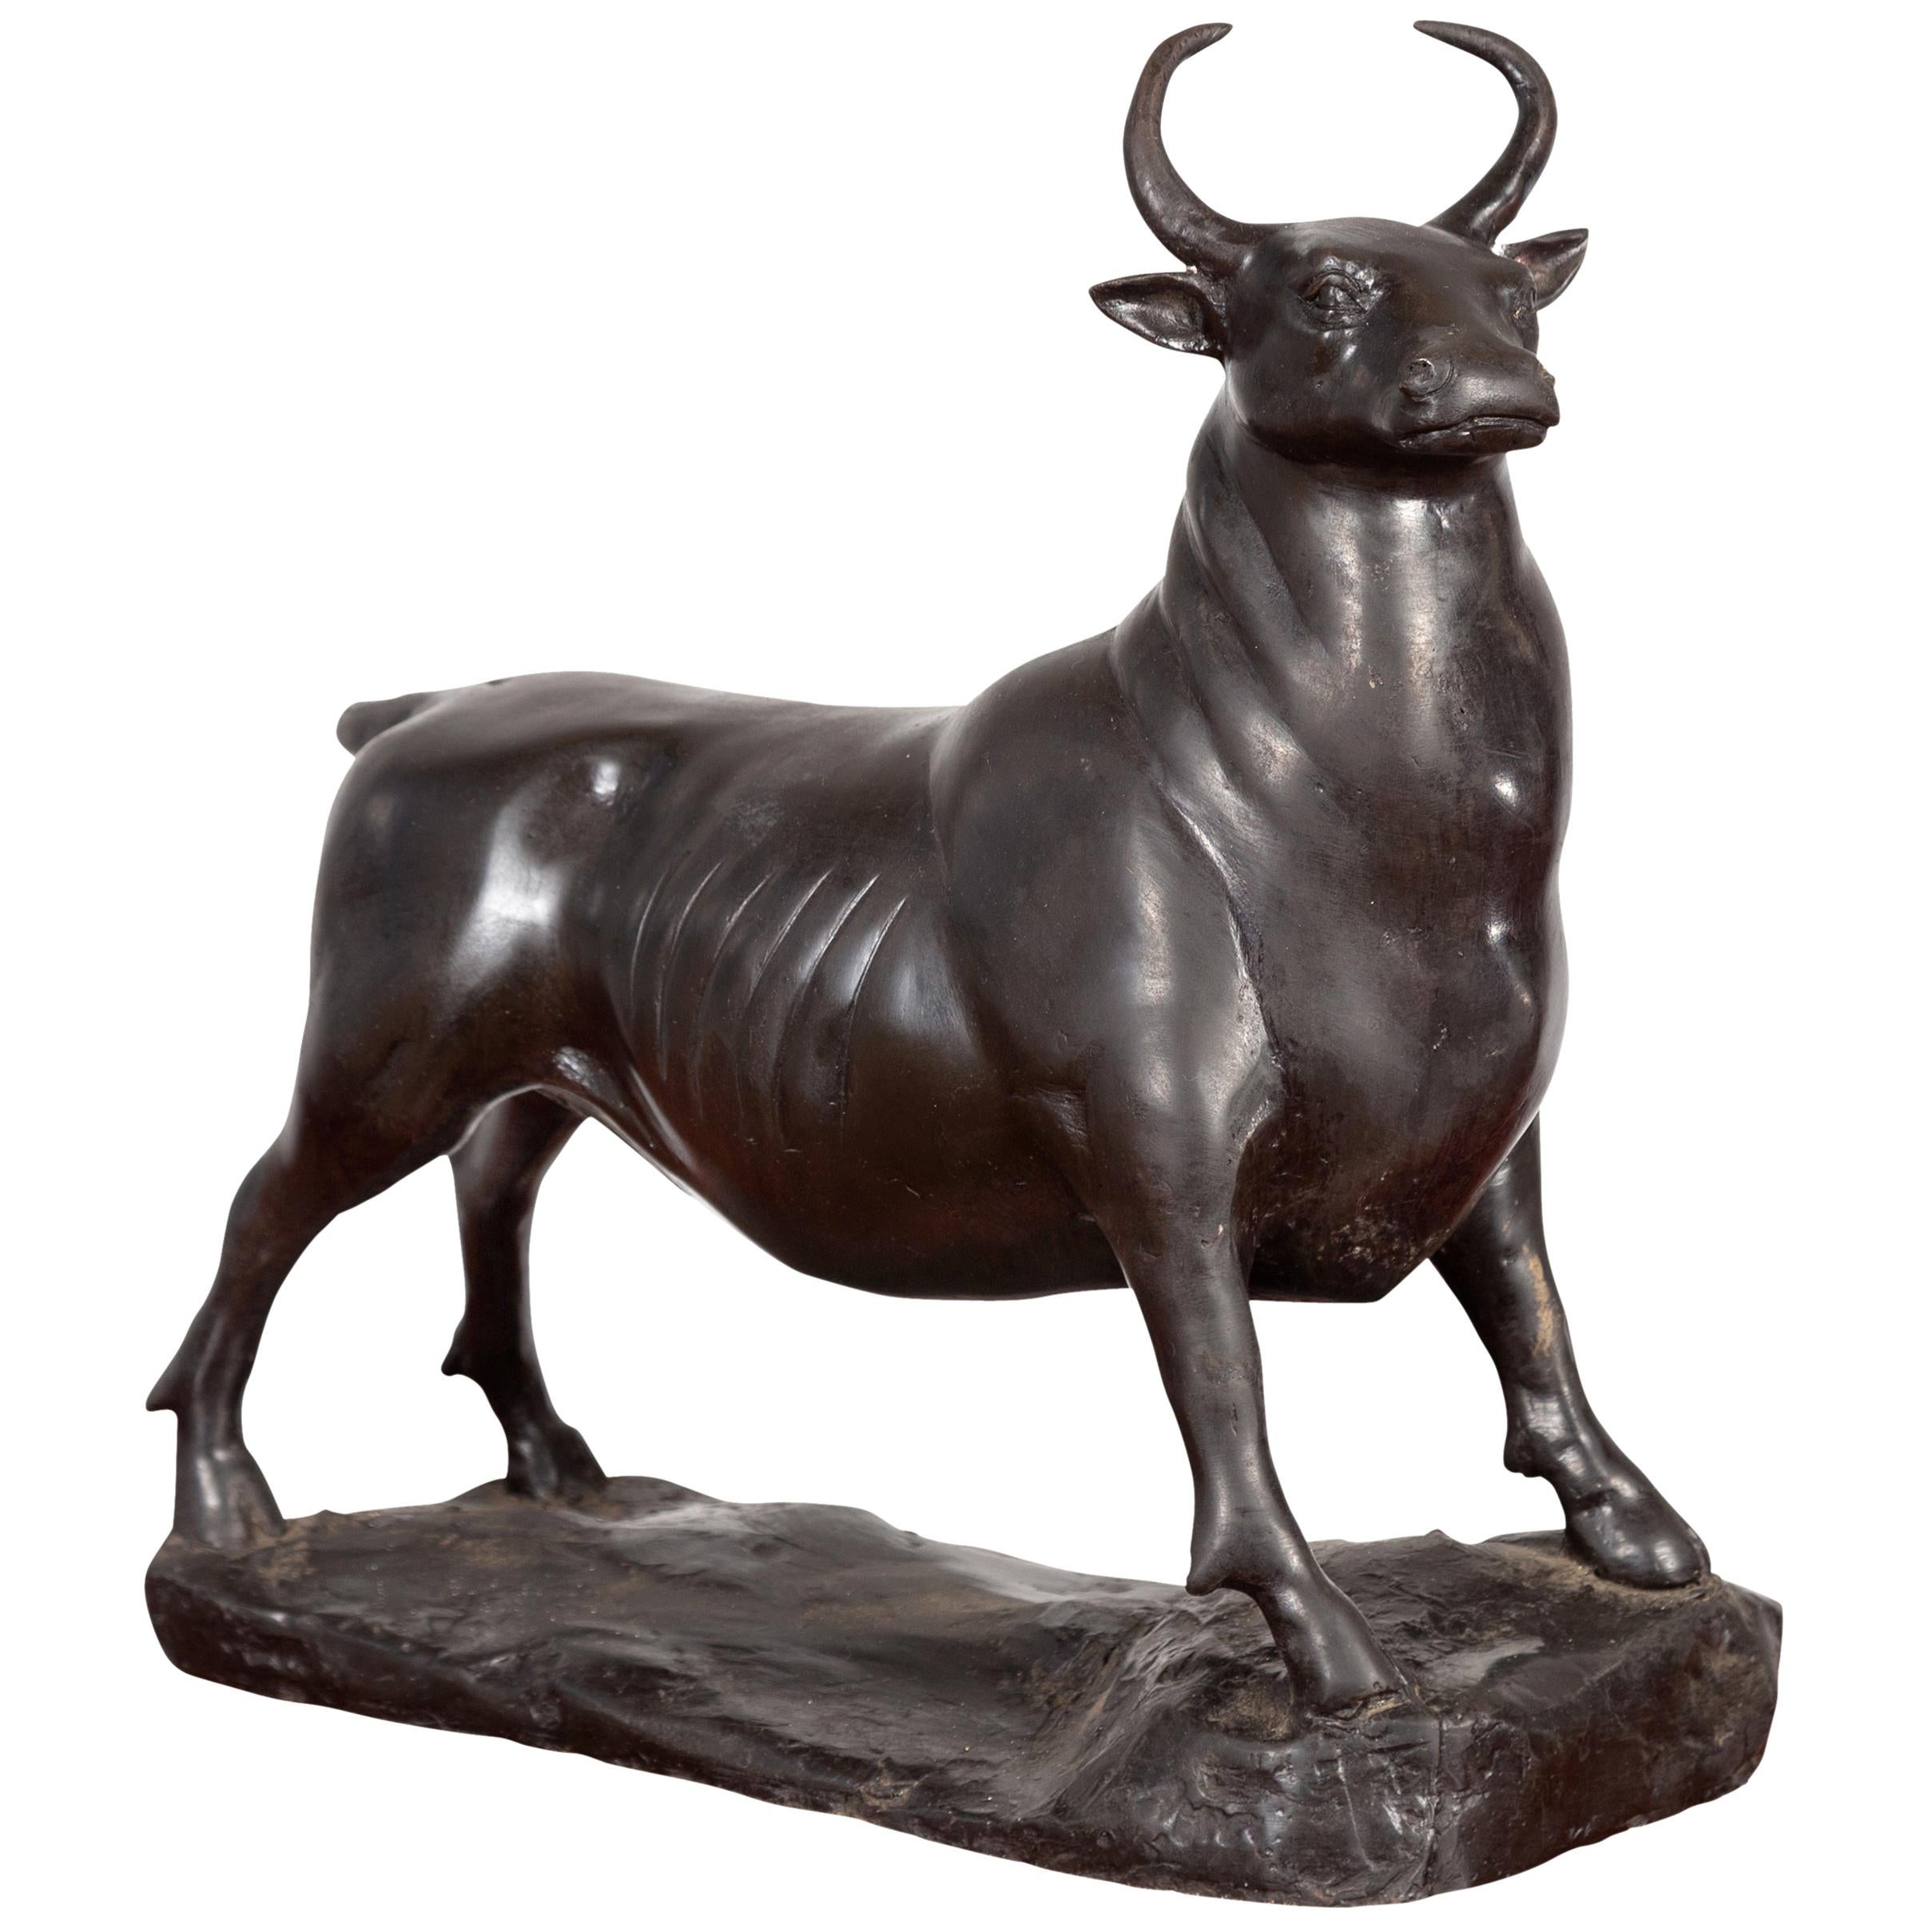 Contemporary Lost Wax Bronze-Skulptur, die einen Stier mit dunkler Patina darstellt